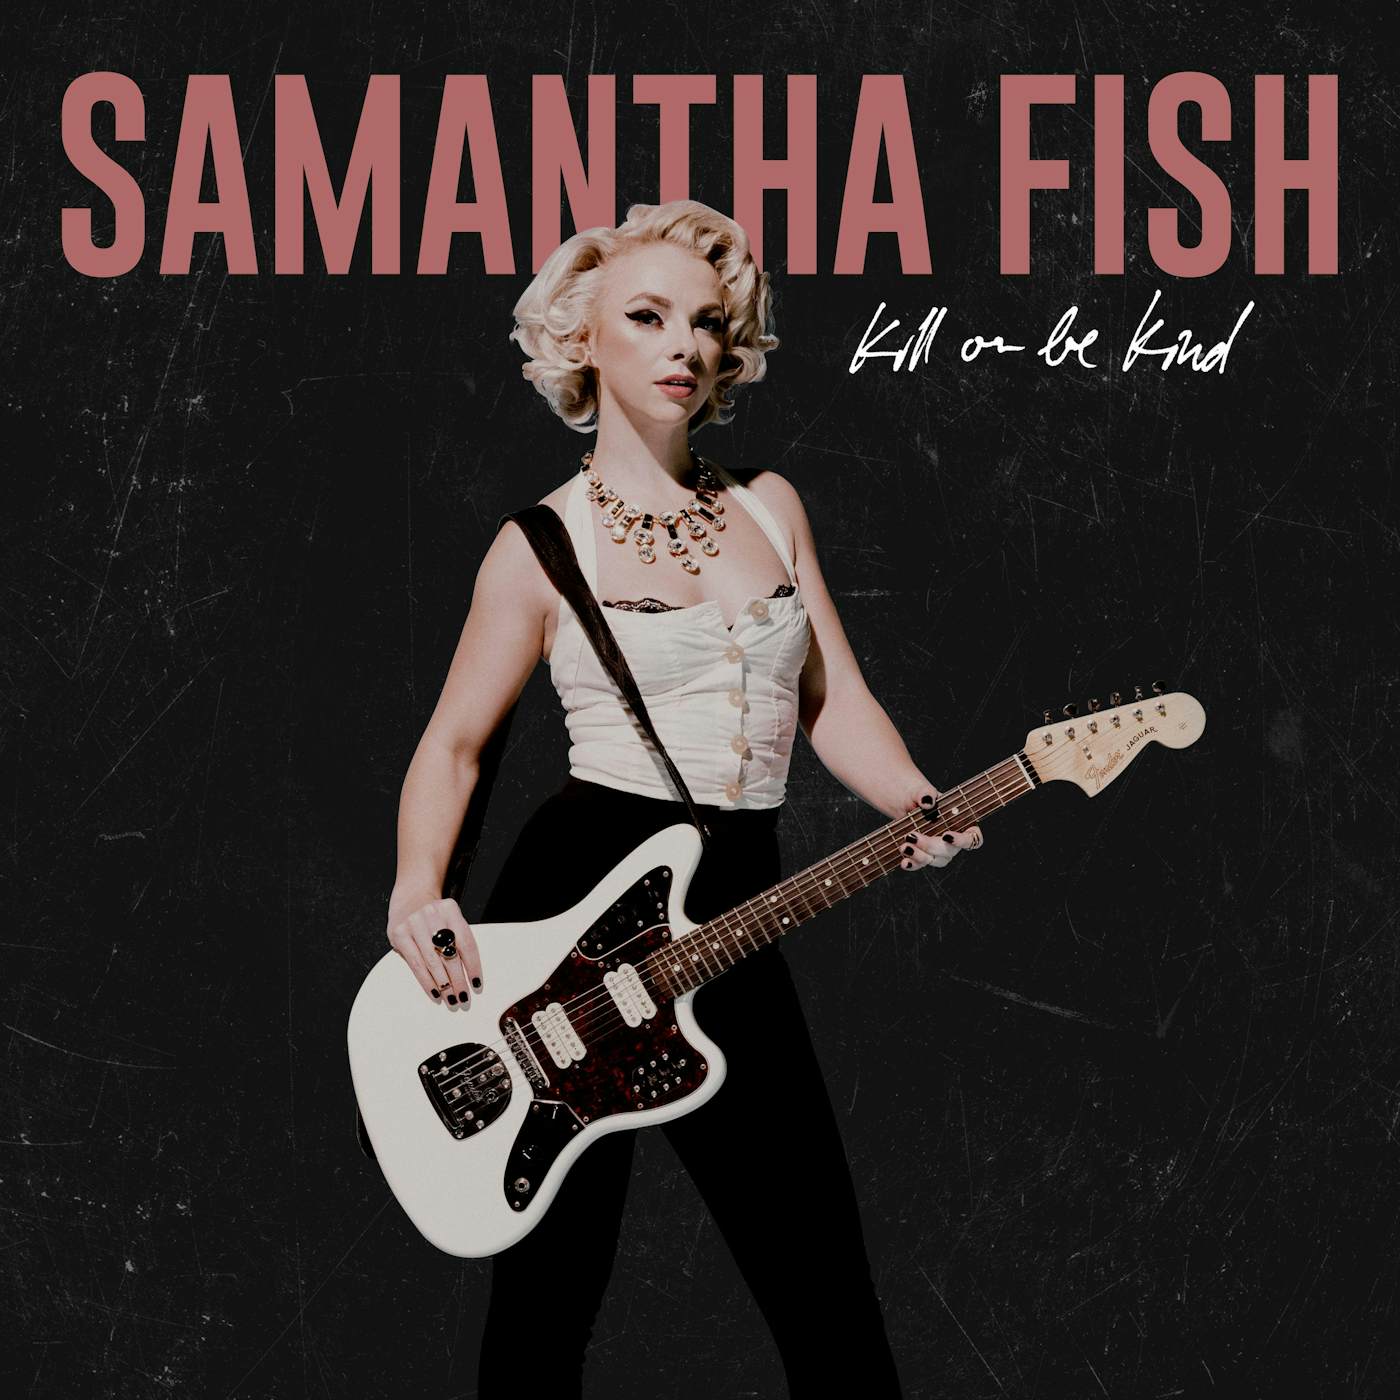 Samantha Fish Kill Or Be Kind Vinyl Record